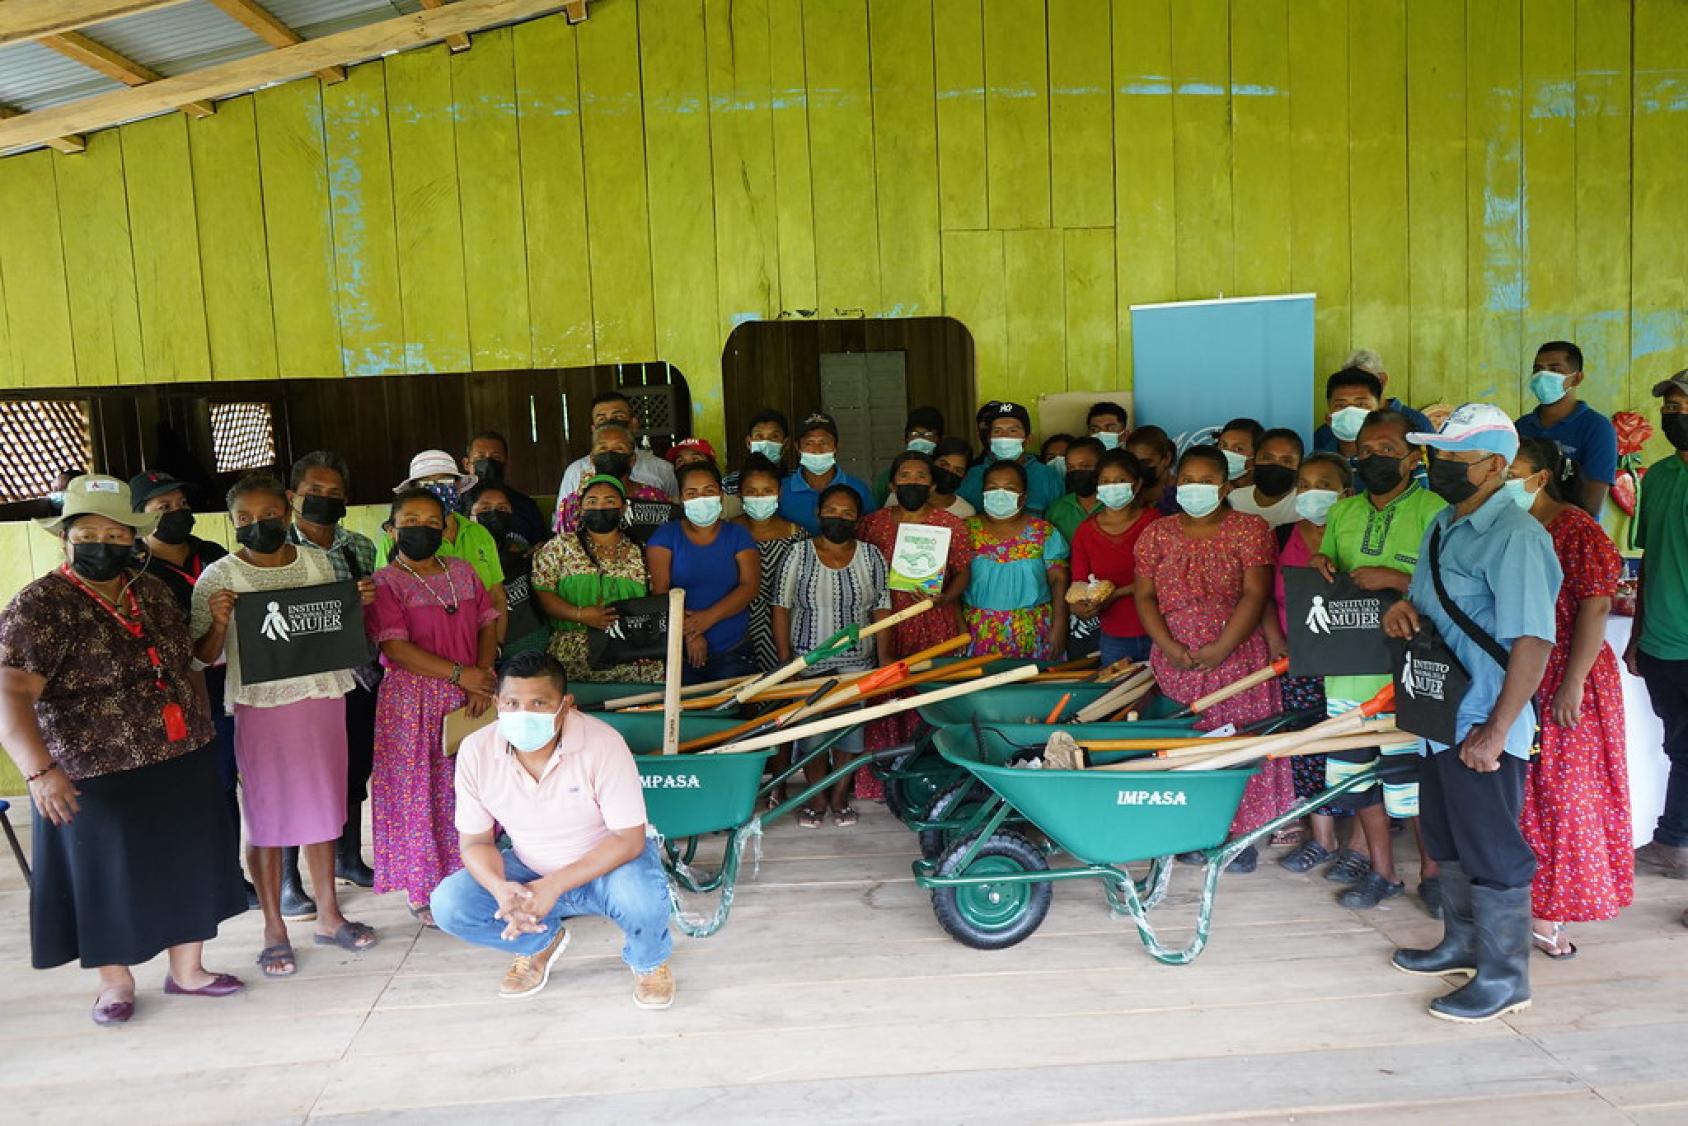 Au Panama, des femmes et des hommes issus d’une communauté autochtone posent devant la caméra sous un hangar avec des brouettes et d’autres outils agricoles.